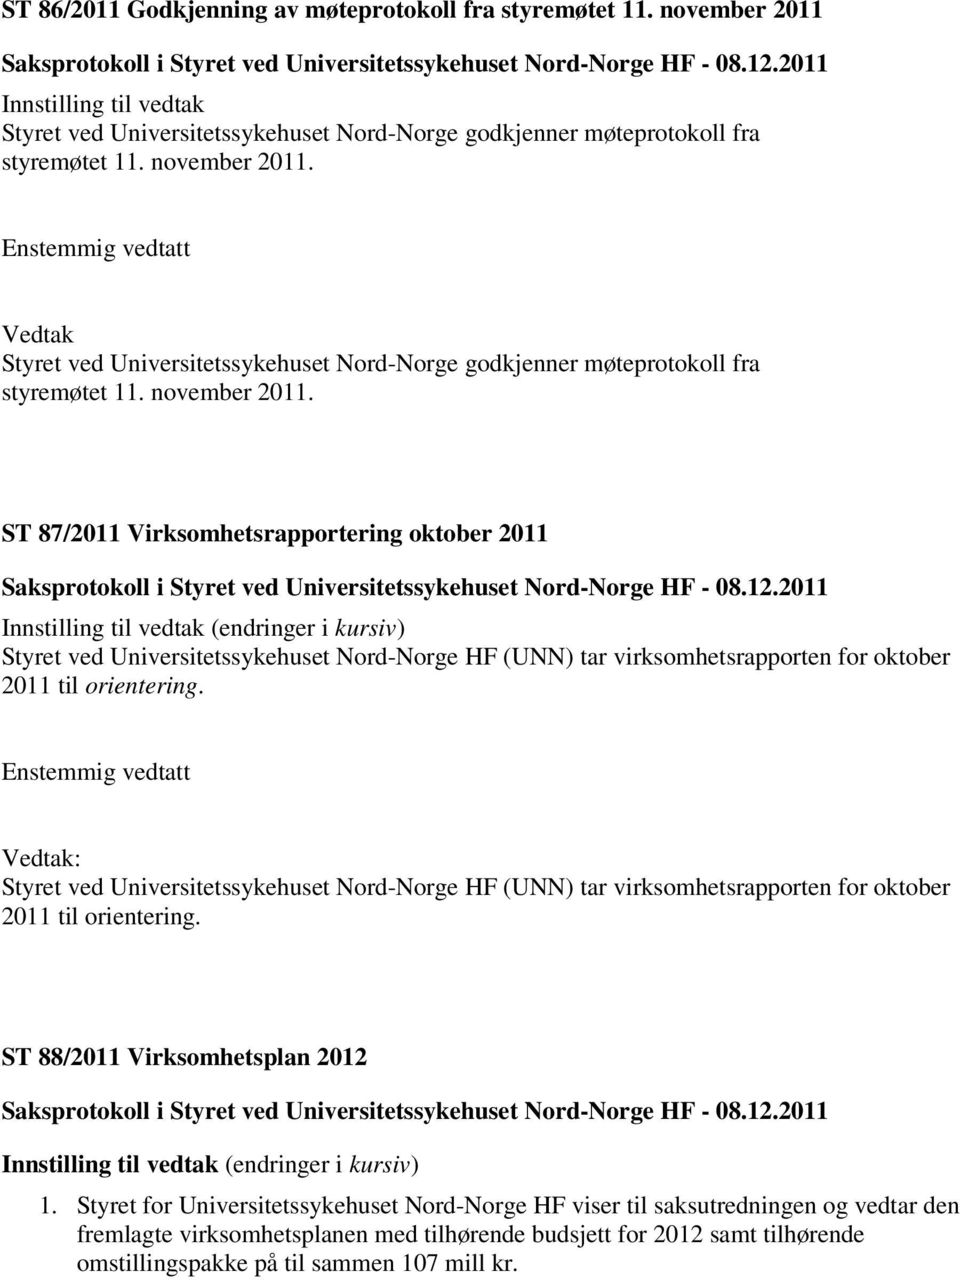 ST 87/2011 Virksomhetsrapportering oktober 2011 Innstilling til vedtak (endringer i kursiv) Styret ved Universitetssykehuset Nord-Norge HF (UNN) tar virksomhetsrapporten for oktober 2011 til